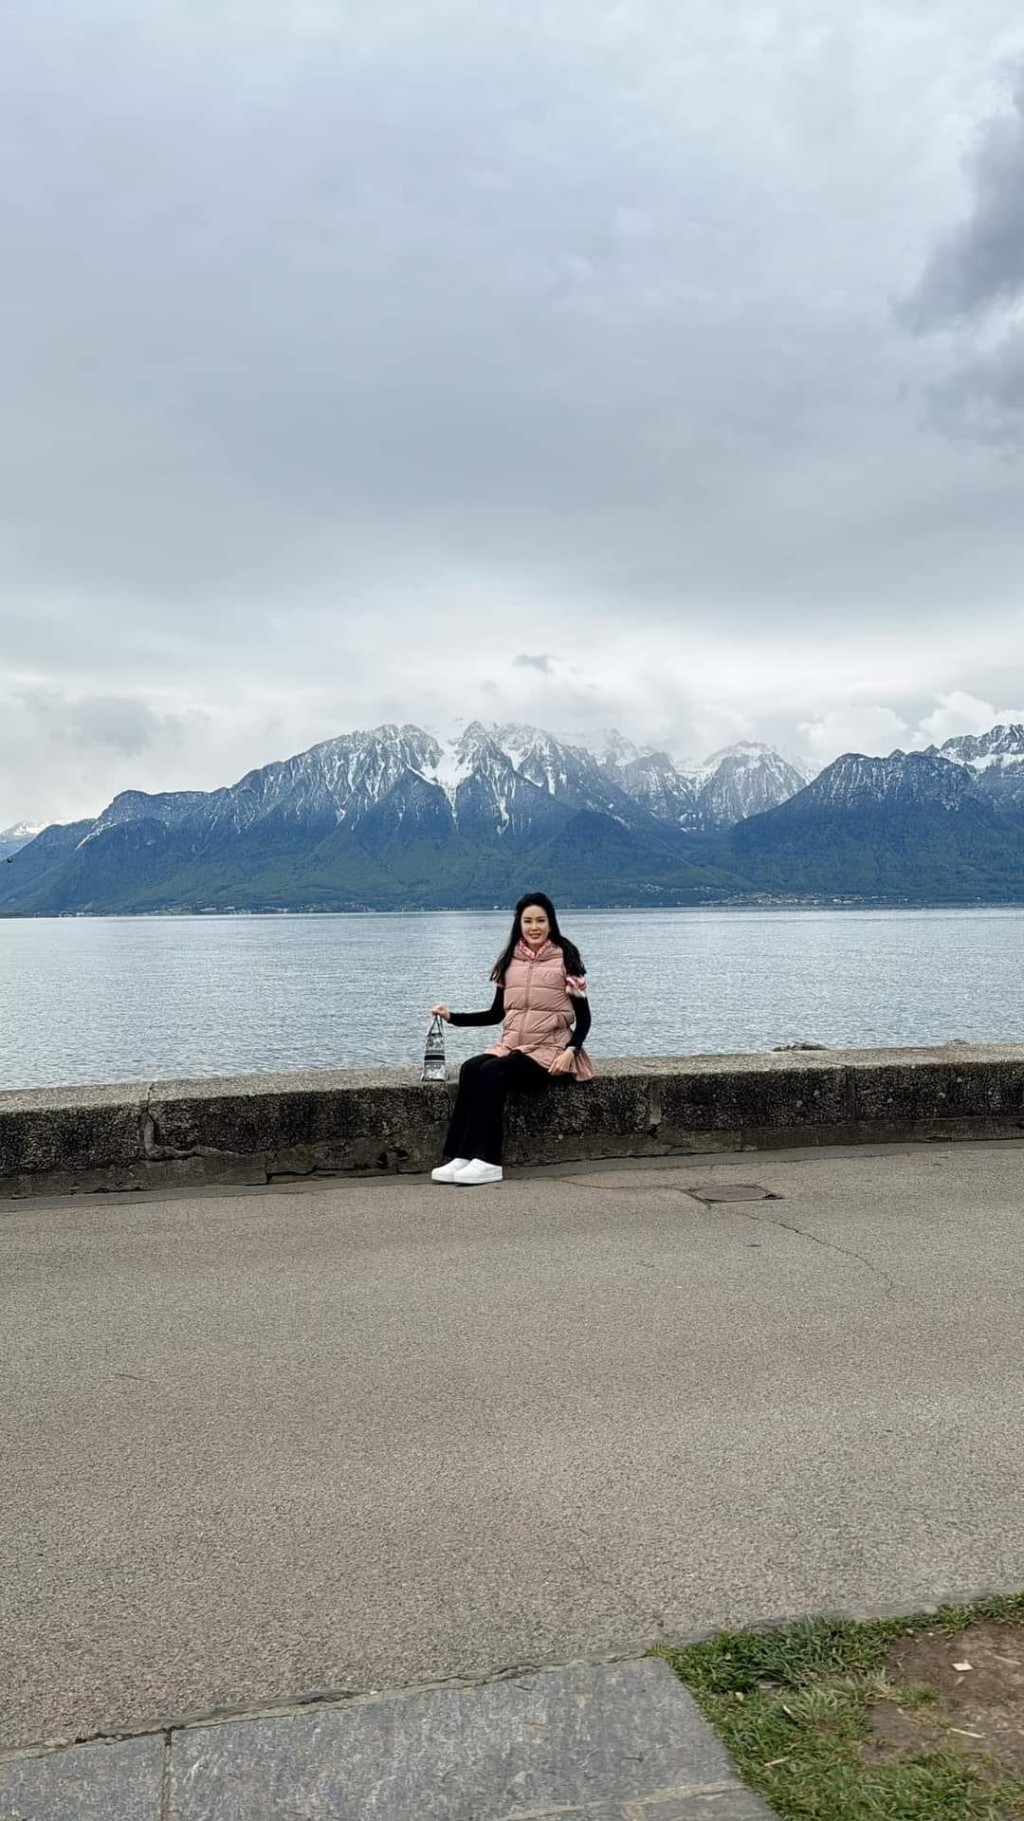 「勇敢」系马主林建康的太太林黄宁艳，日前在她的社交平台分享了两人畅游瑞士的靓相。